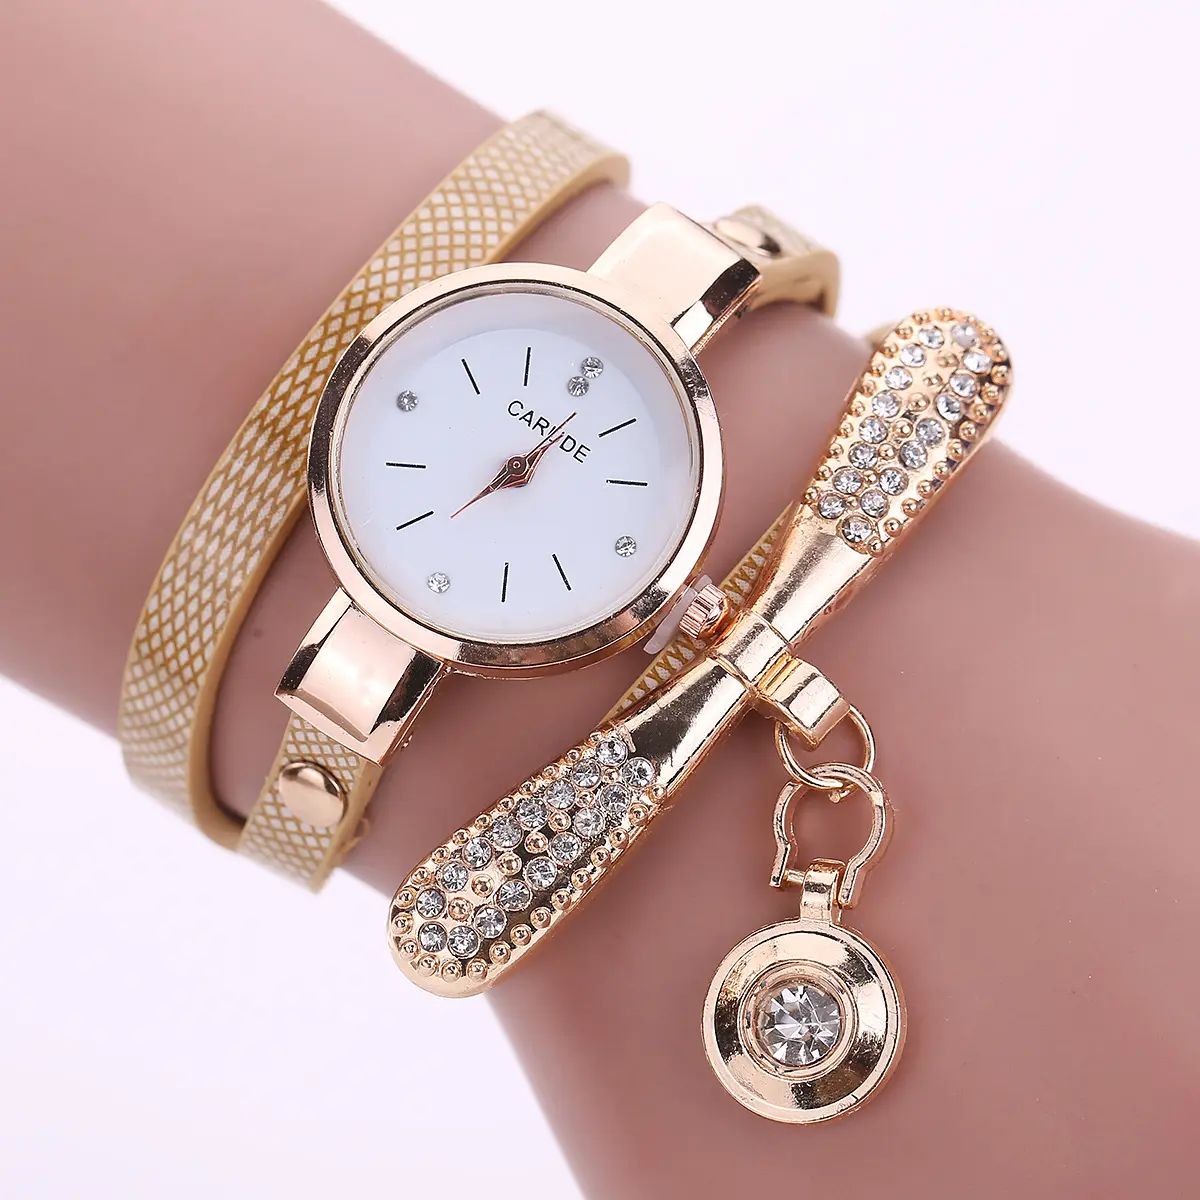 Luxo Couro Bonito Charme Relógio De Quartzo Das Mulheres Senhoras Casual Cristal Moda Pulseira Relógio De Pulso relógio feminino feminino